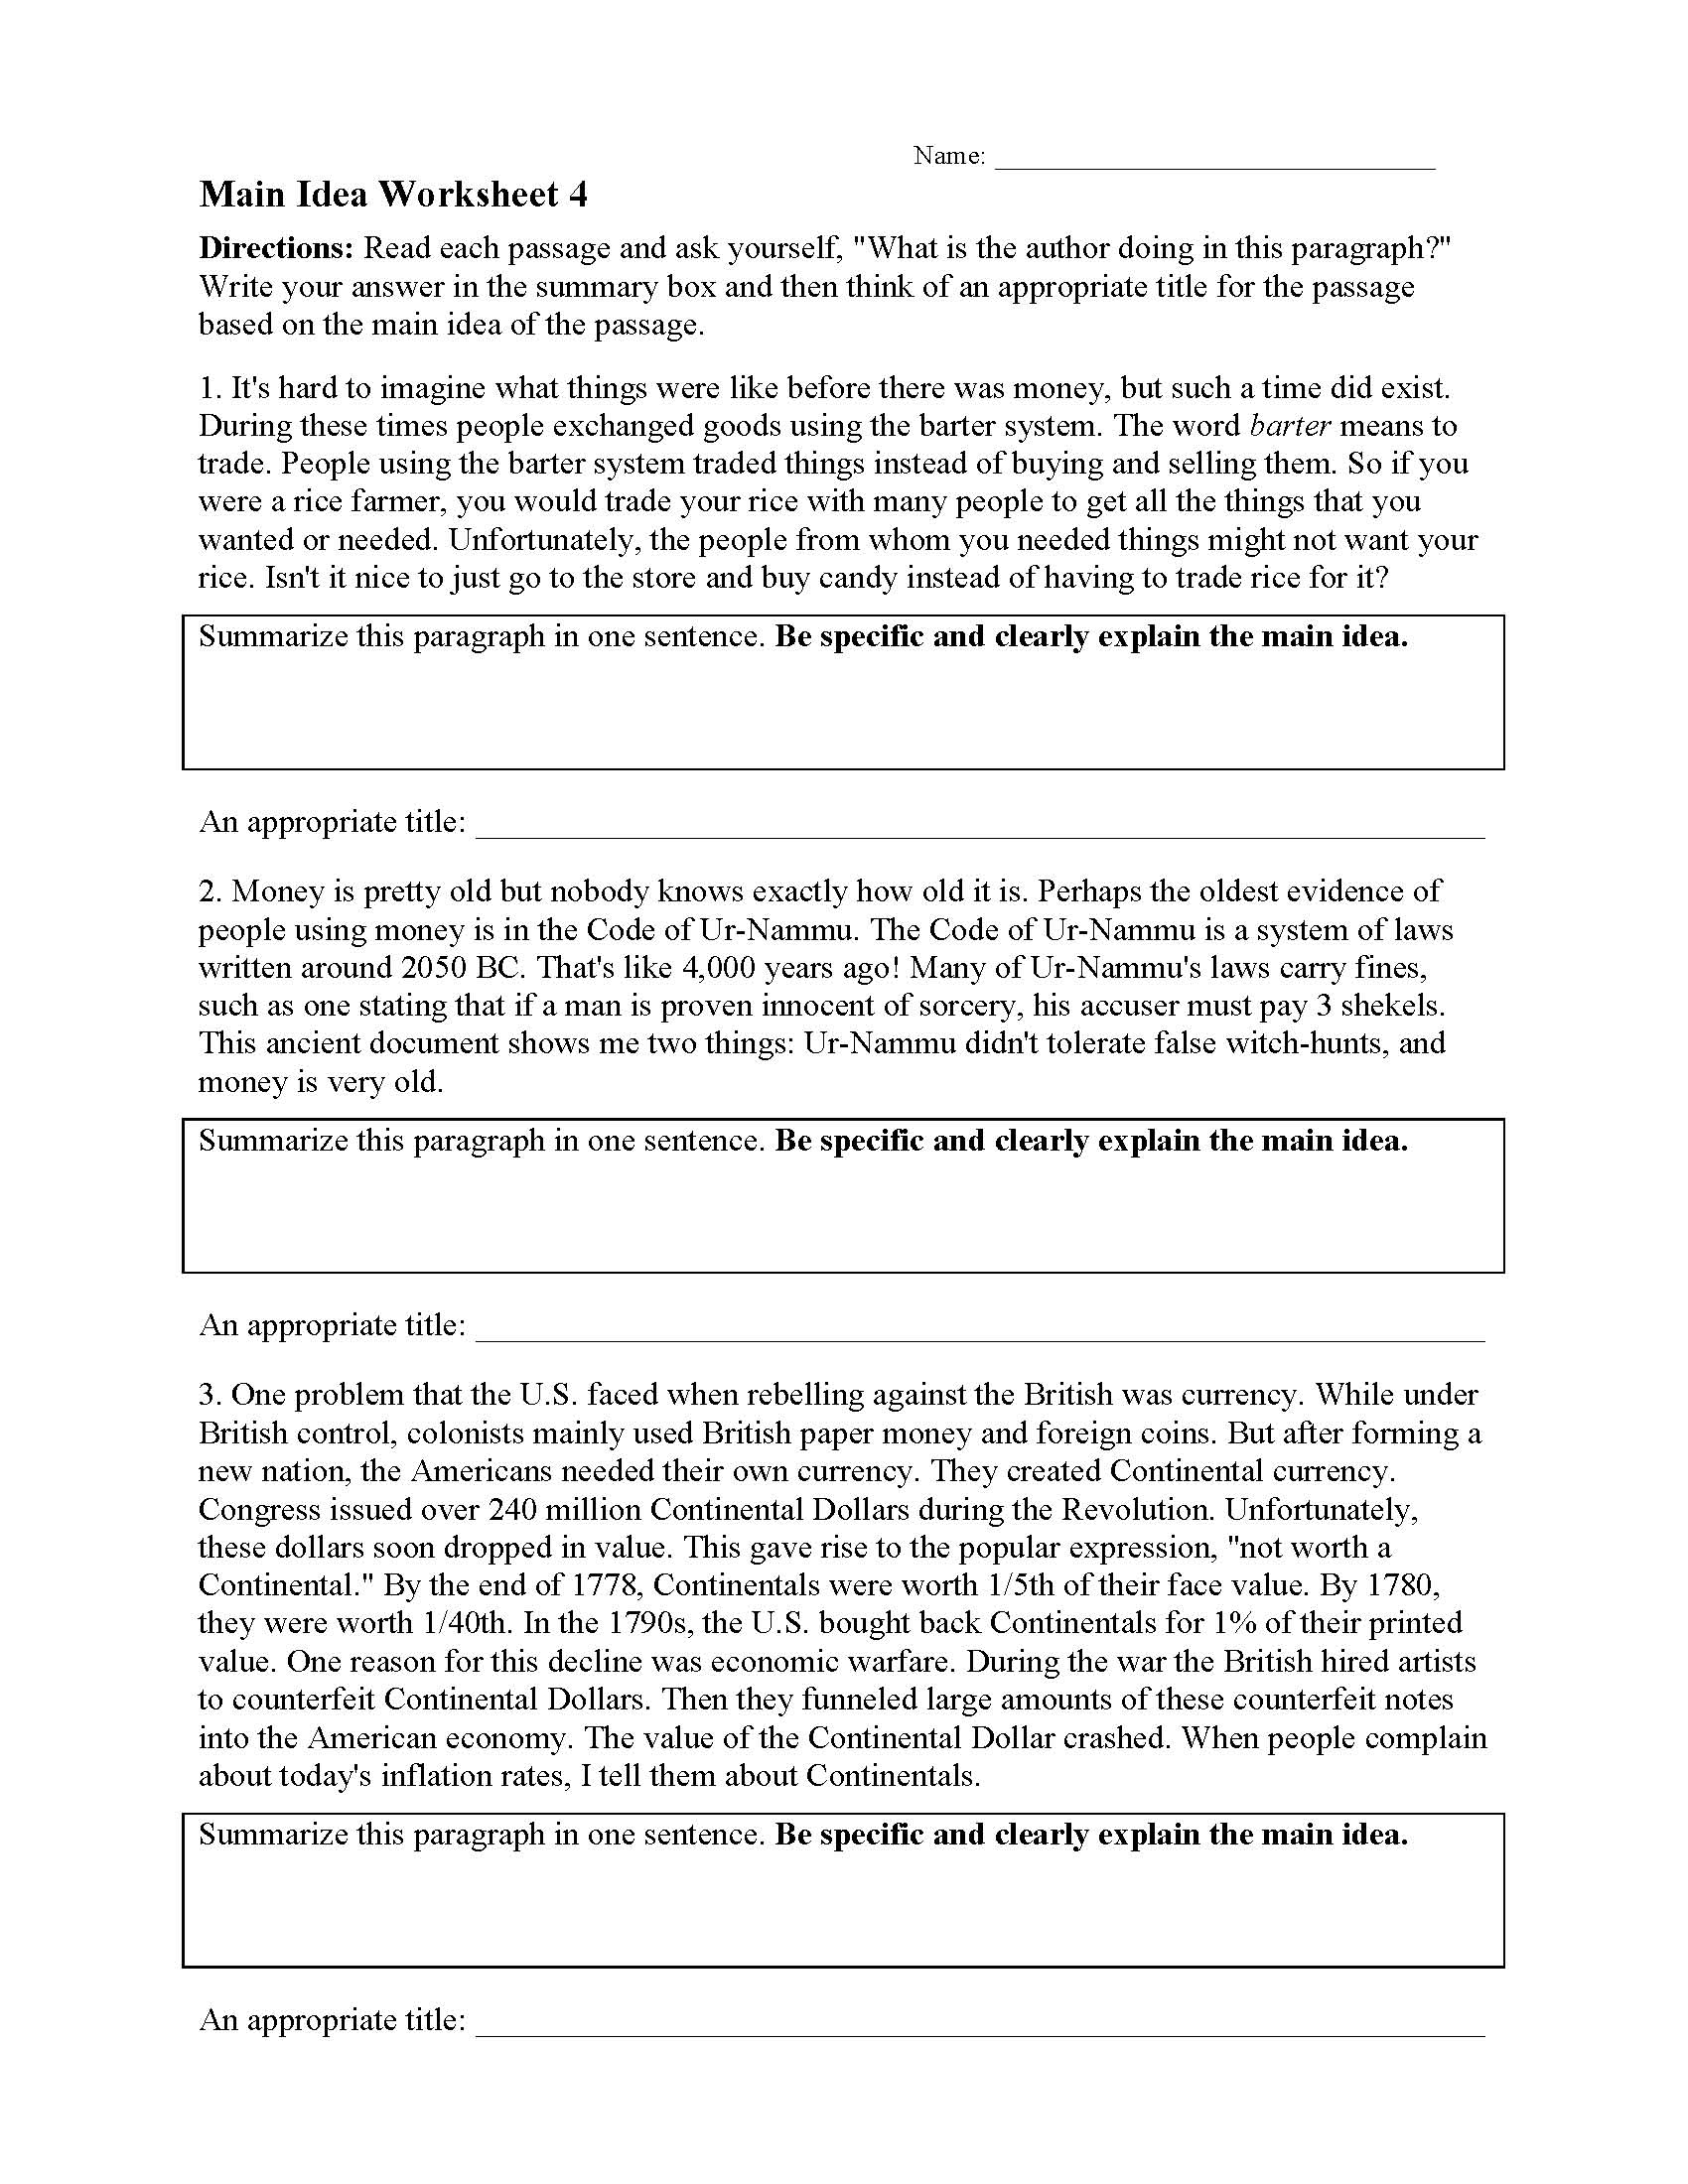 Main Idea Worksheets  Ereading Worksheets Regarding Main Idea Worksheet 5